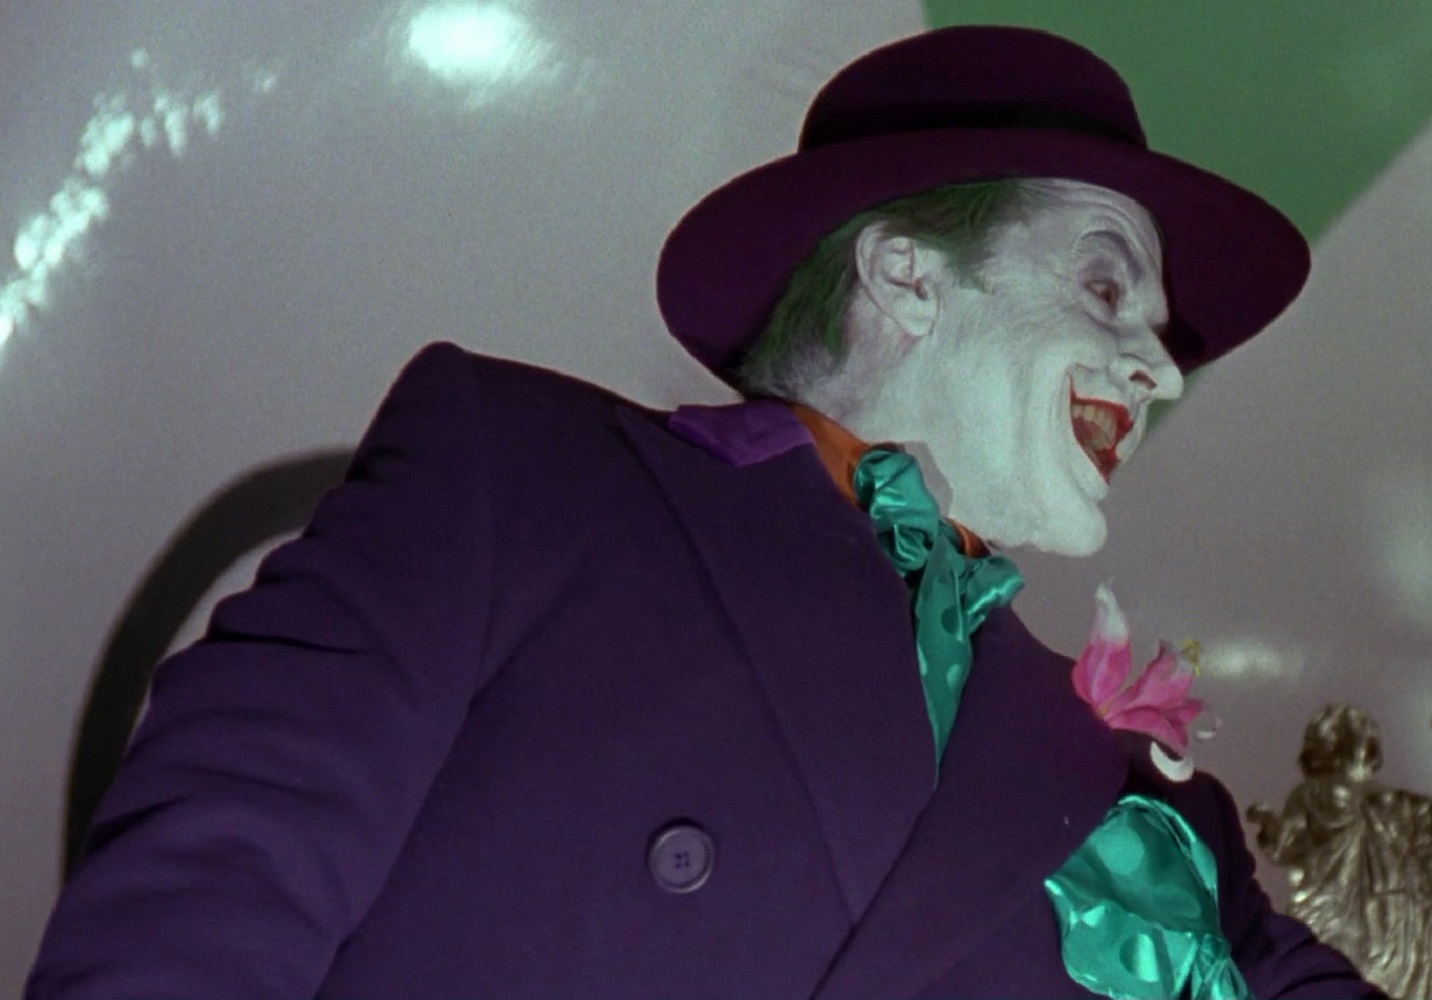 Joker costume - overcoat